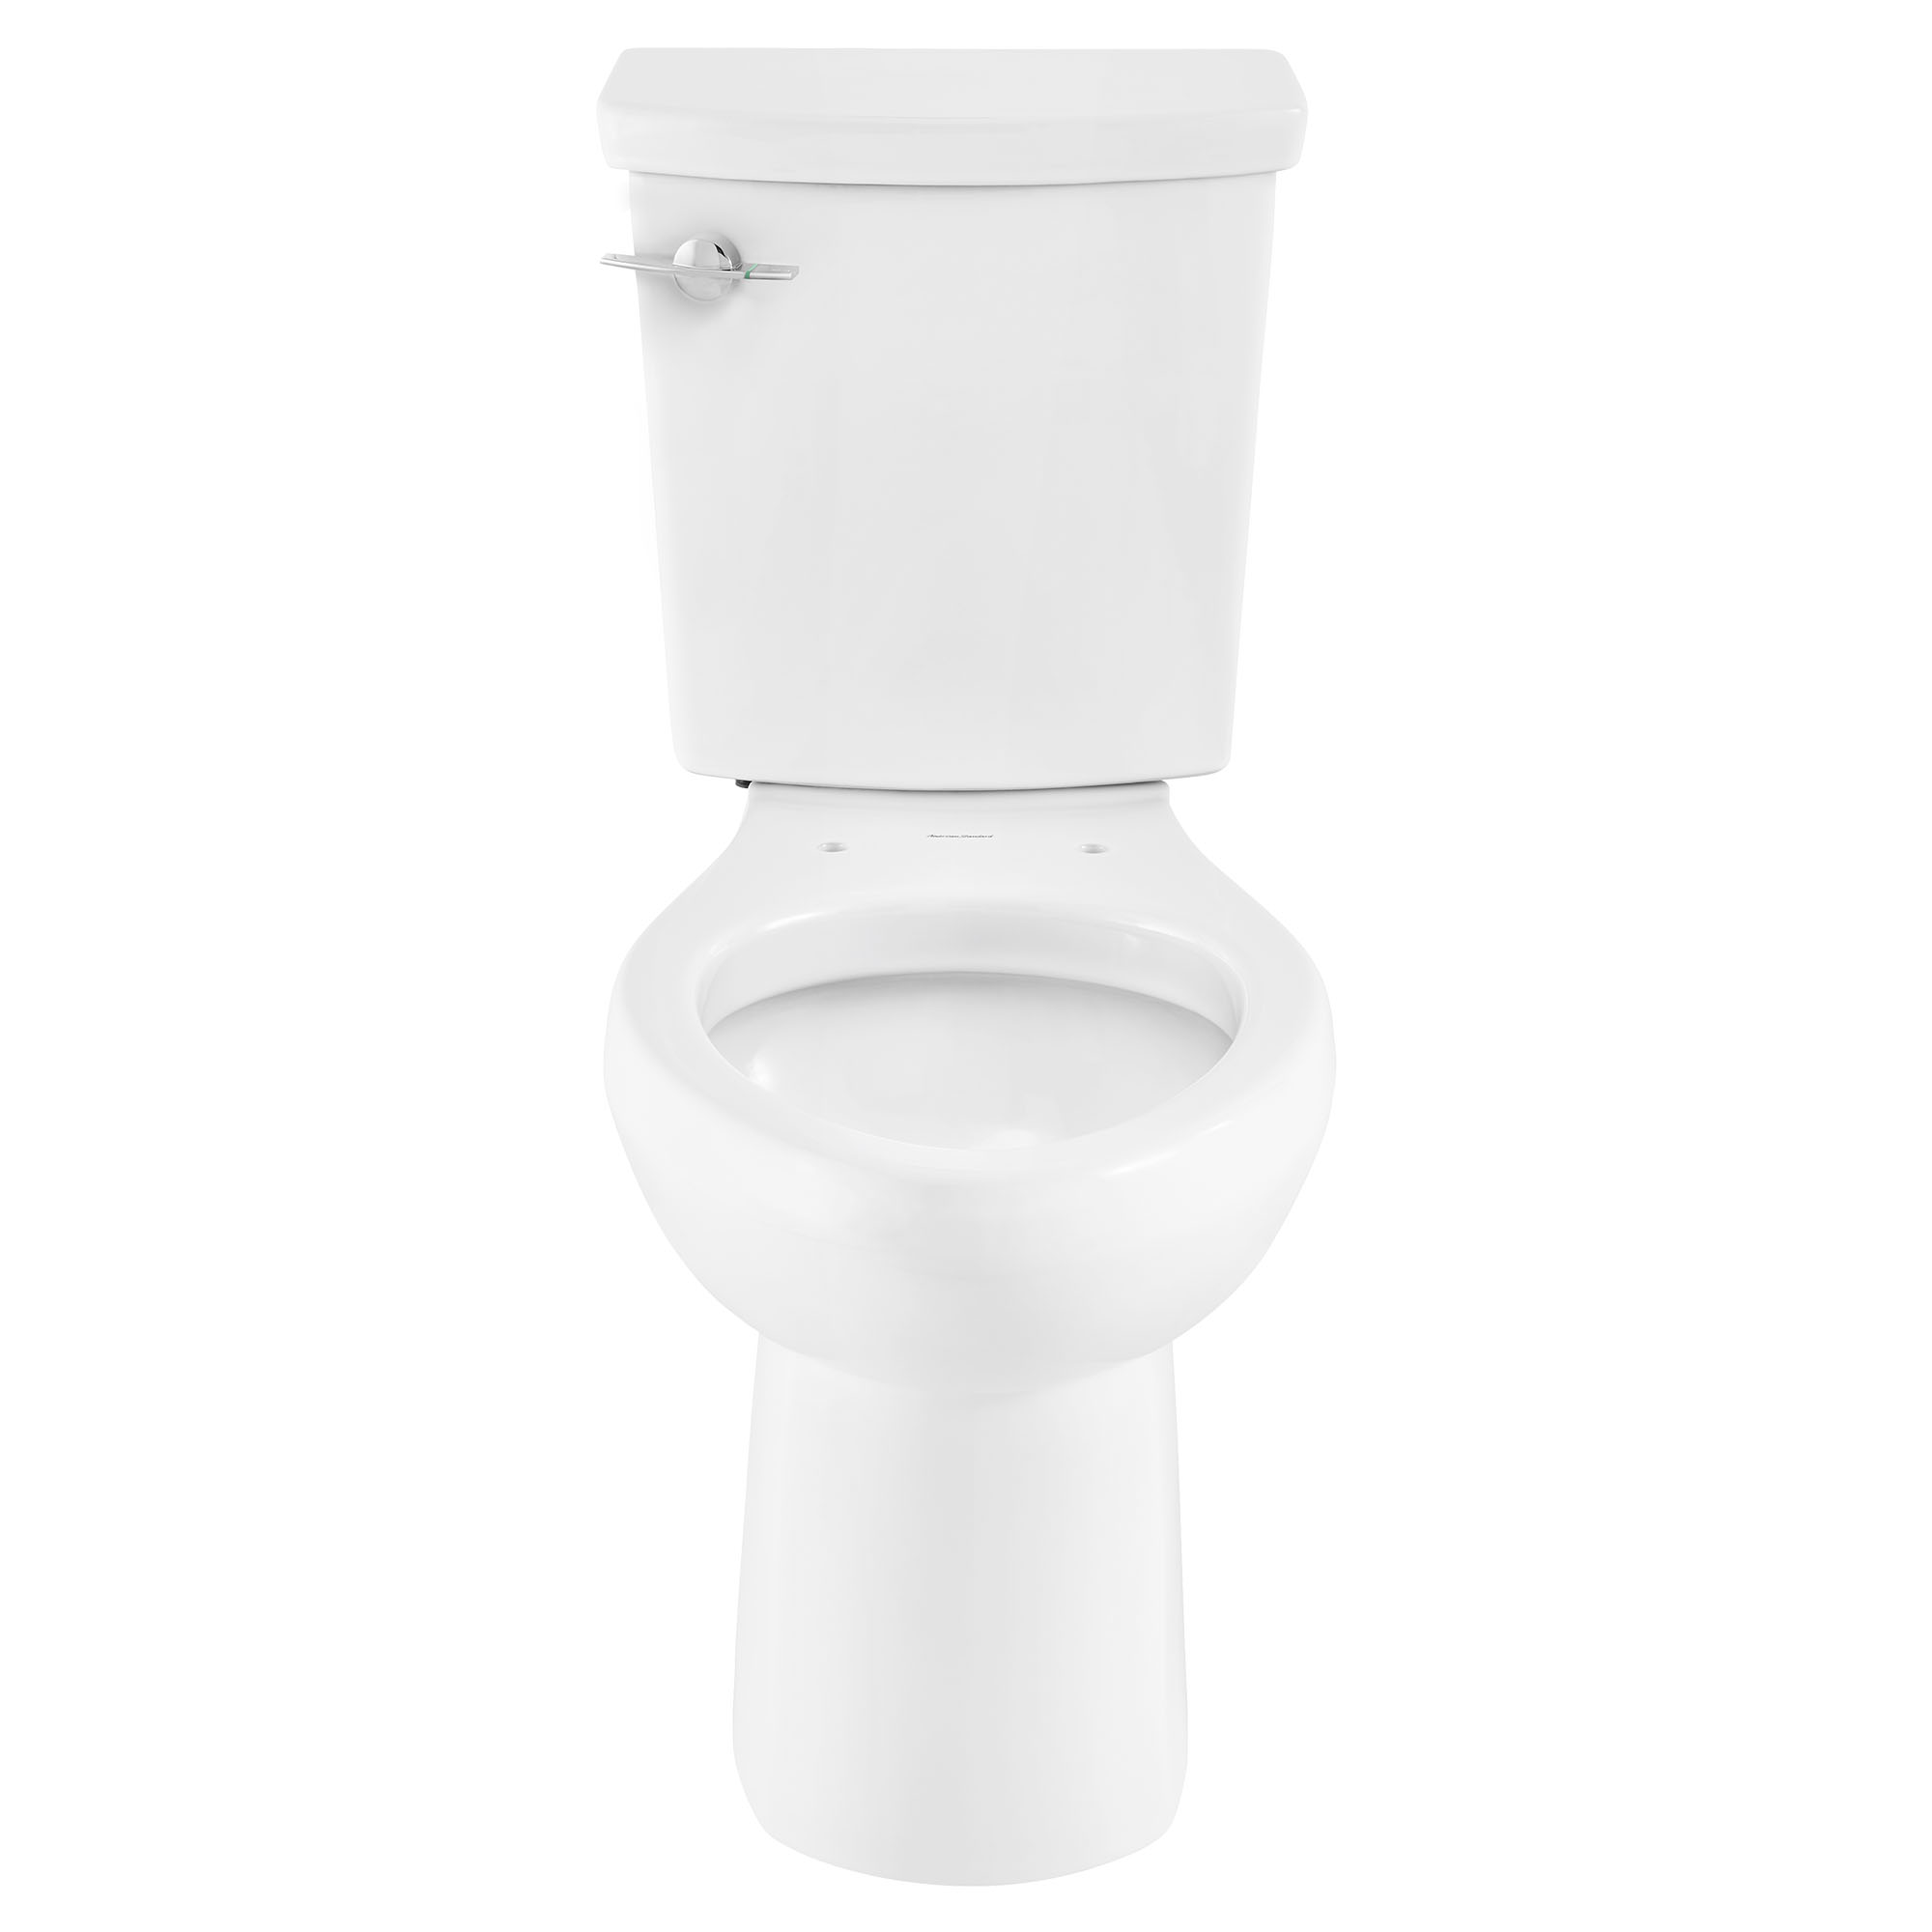 Toilette H2Option ADA, 2 pièces, chasse double 1,28 gpc/4,8 lpc et 0,92 gpc/3,5 lpc, à cuvette allongée à hauteur de chaise, sans siège